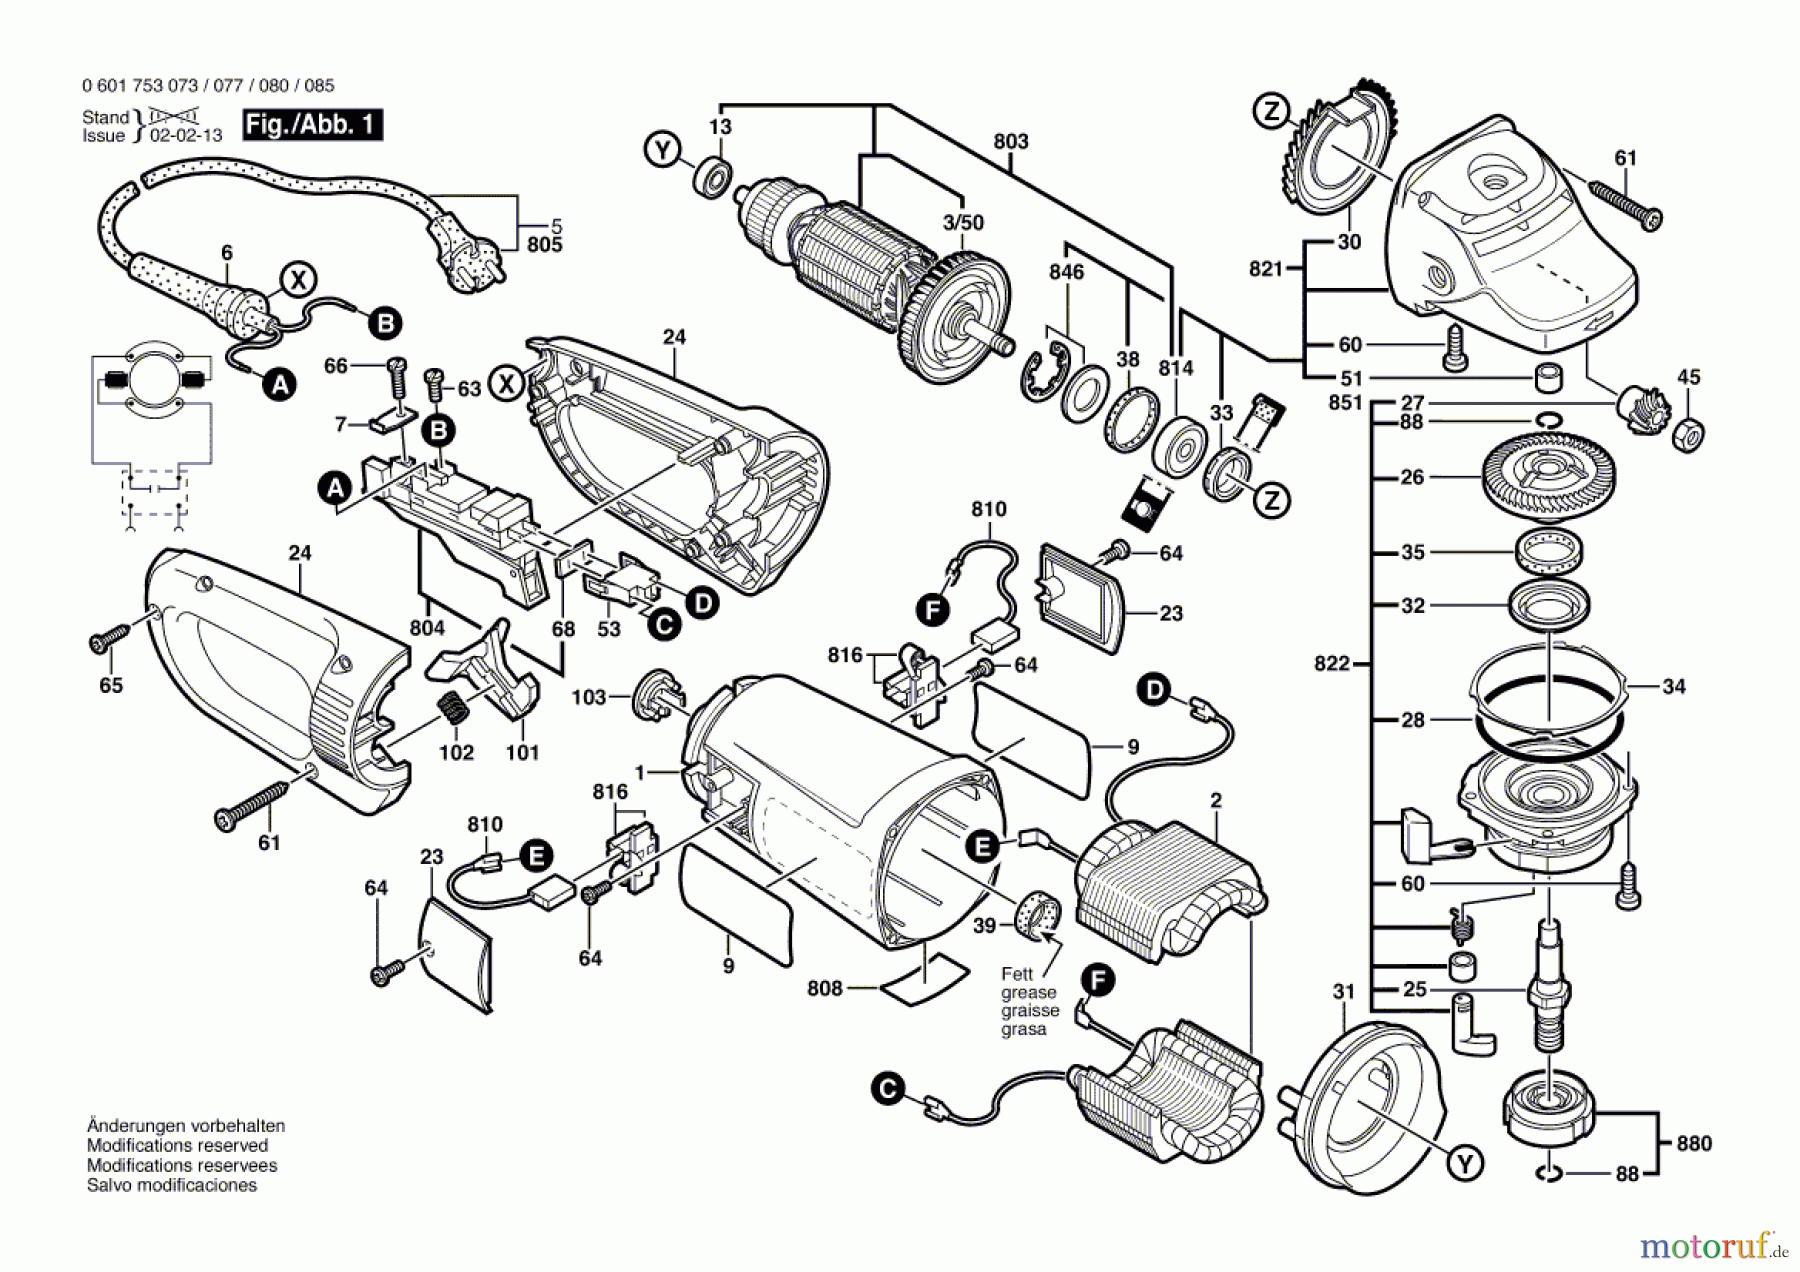  Bosch Werkzeug Winkelschleifer GWS 23-180 S Seite 1